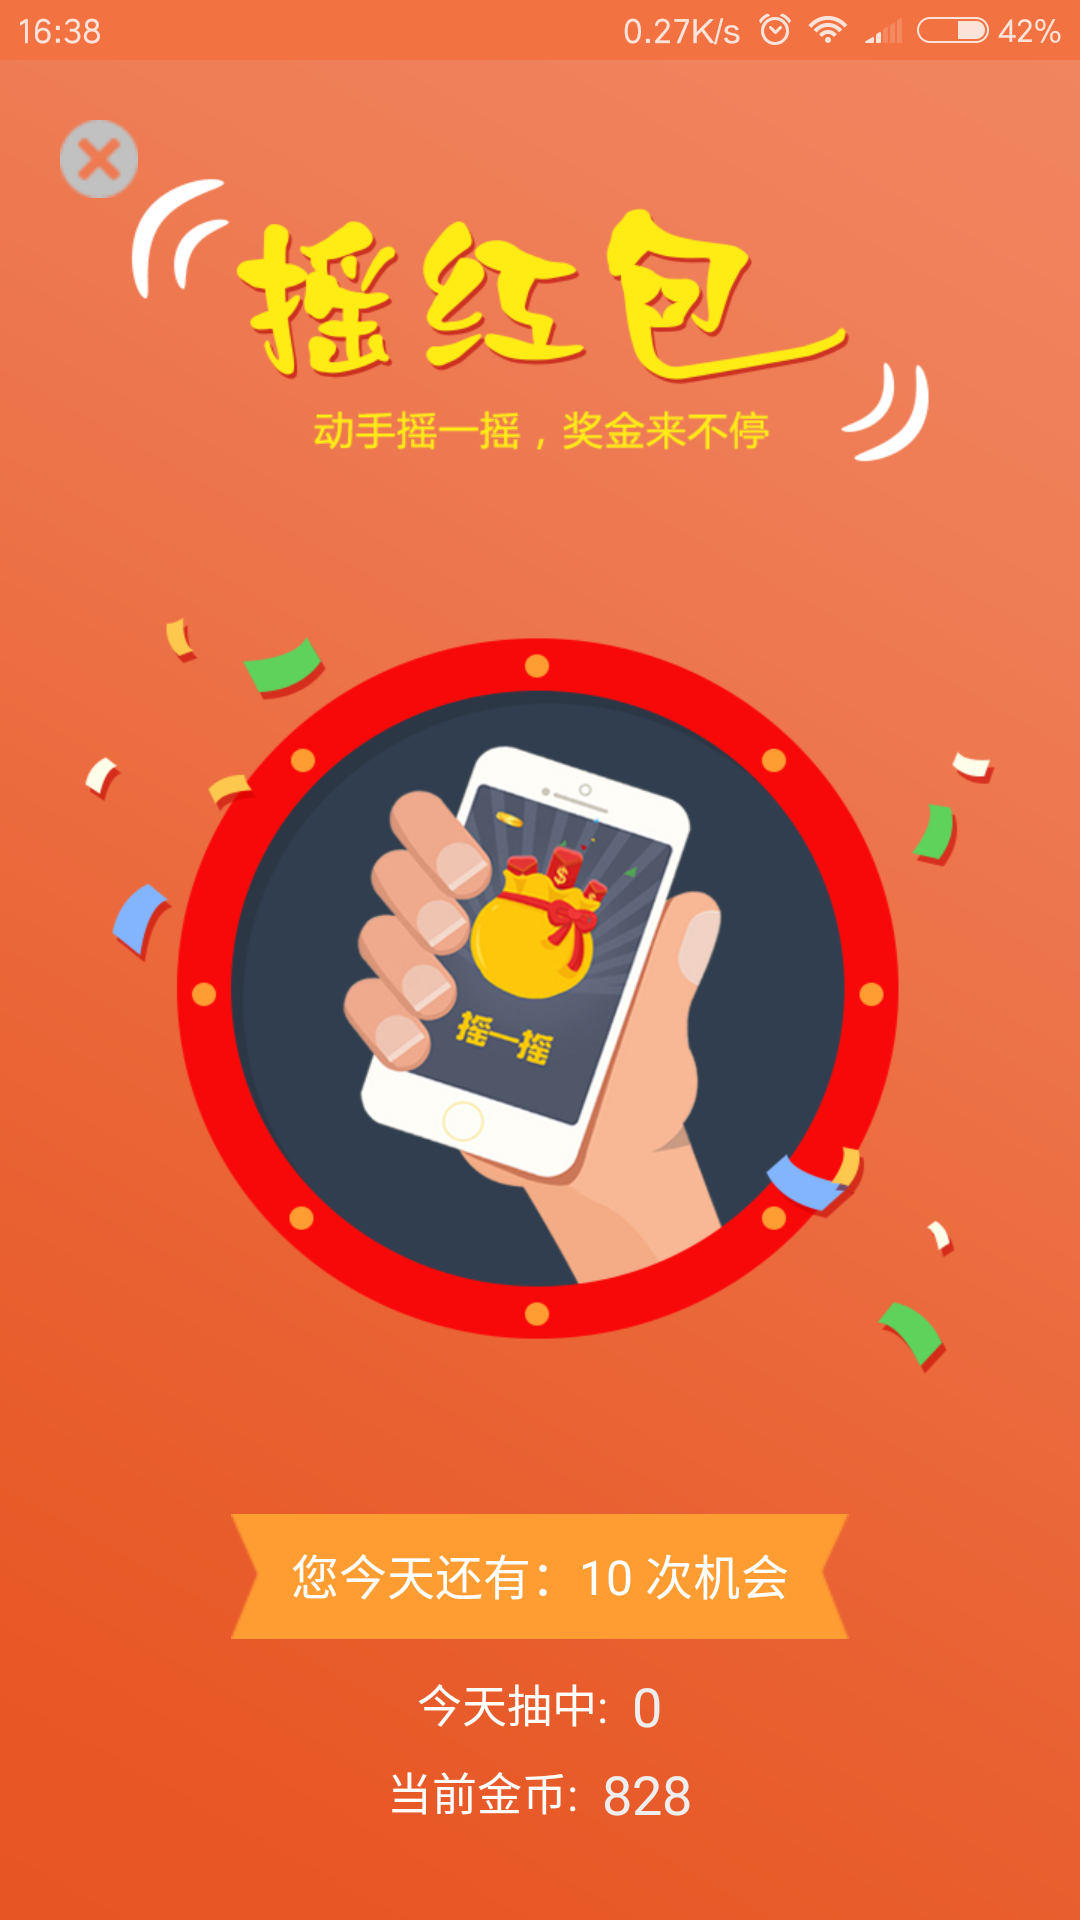 众彩生活app下载,众彩生活app下载安装2017